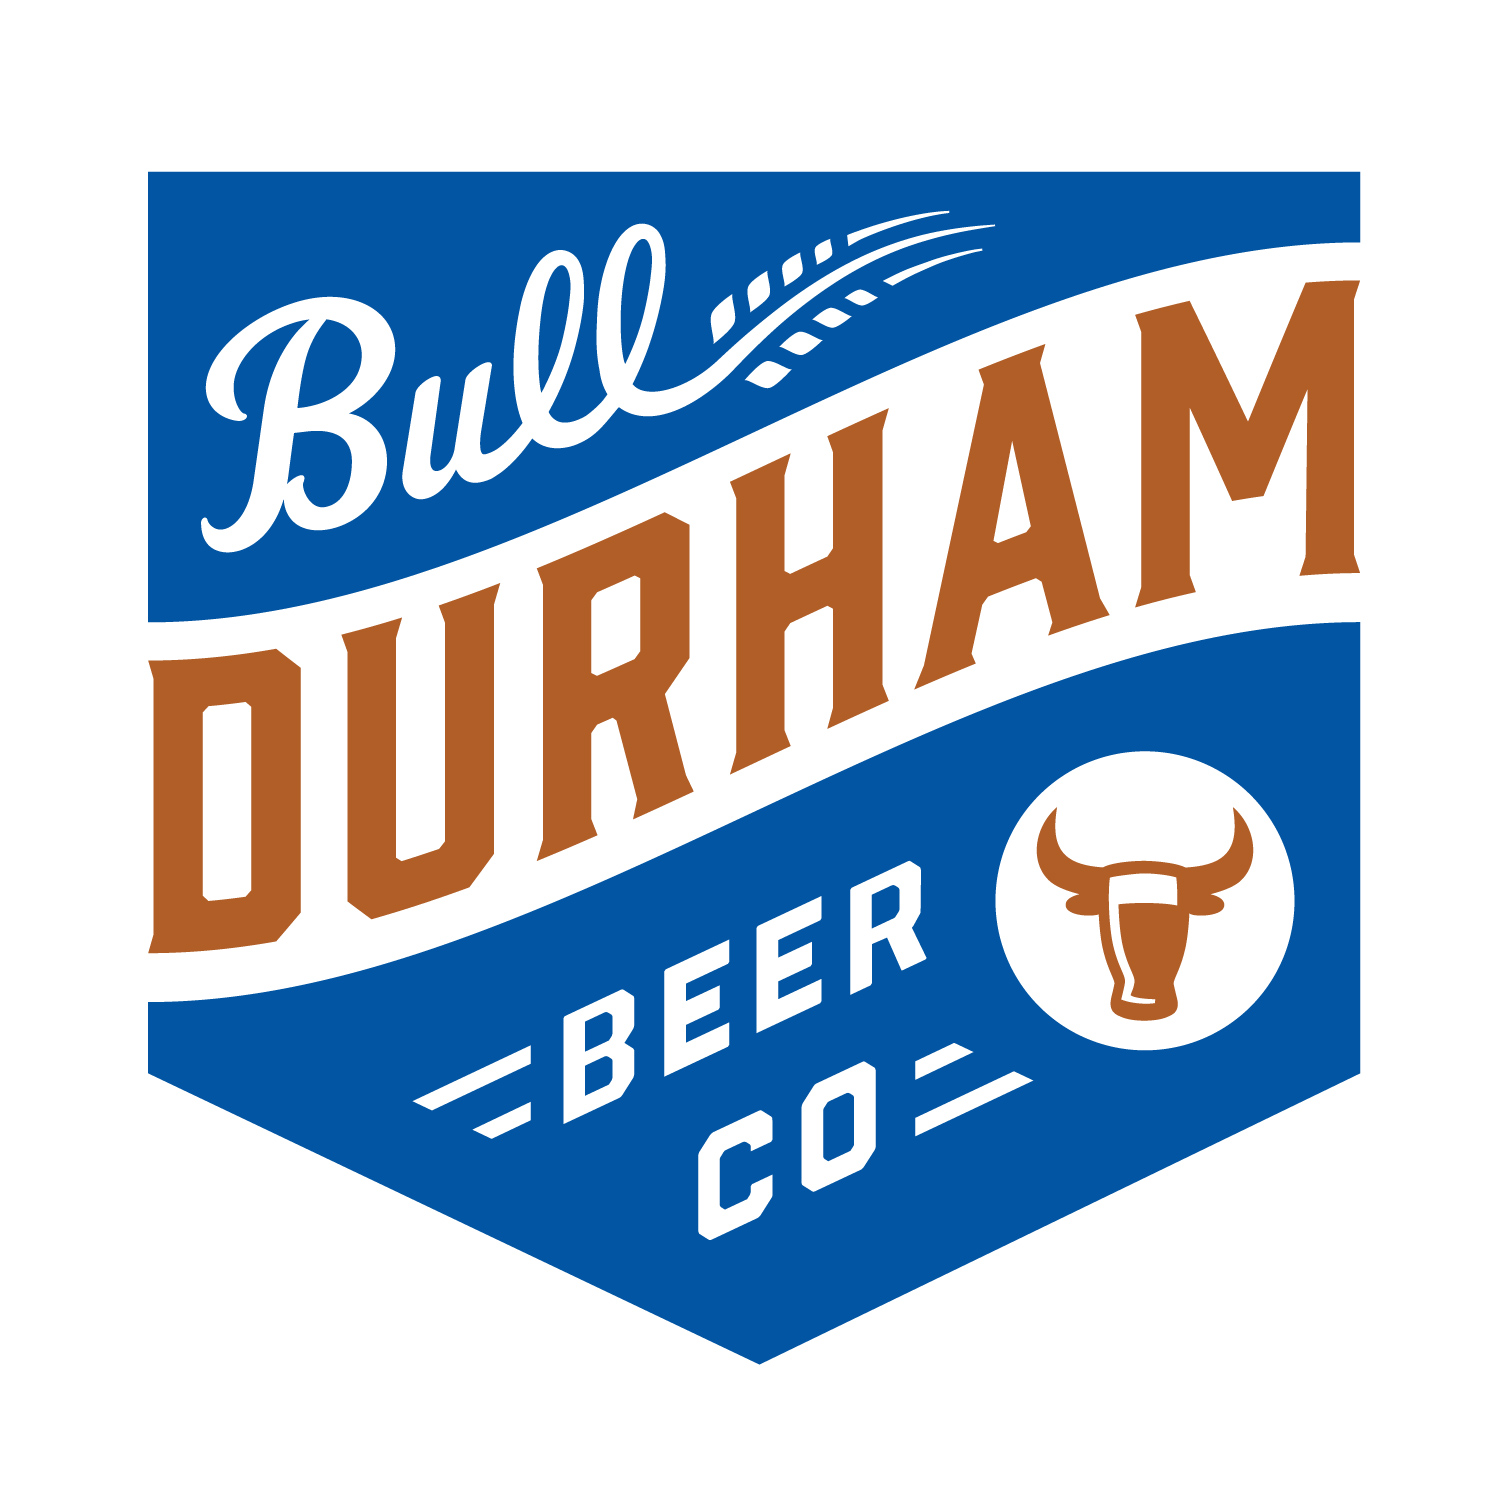 Sponsor Bull Durham Beer Co